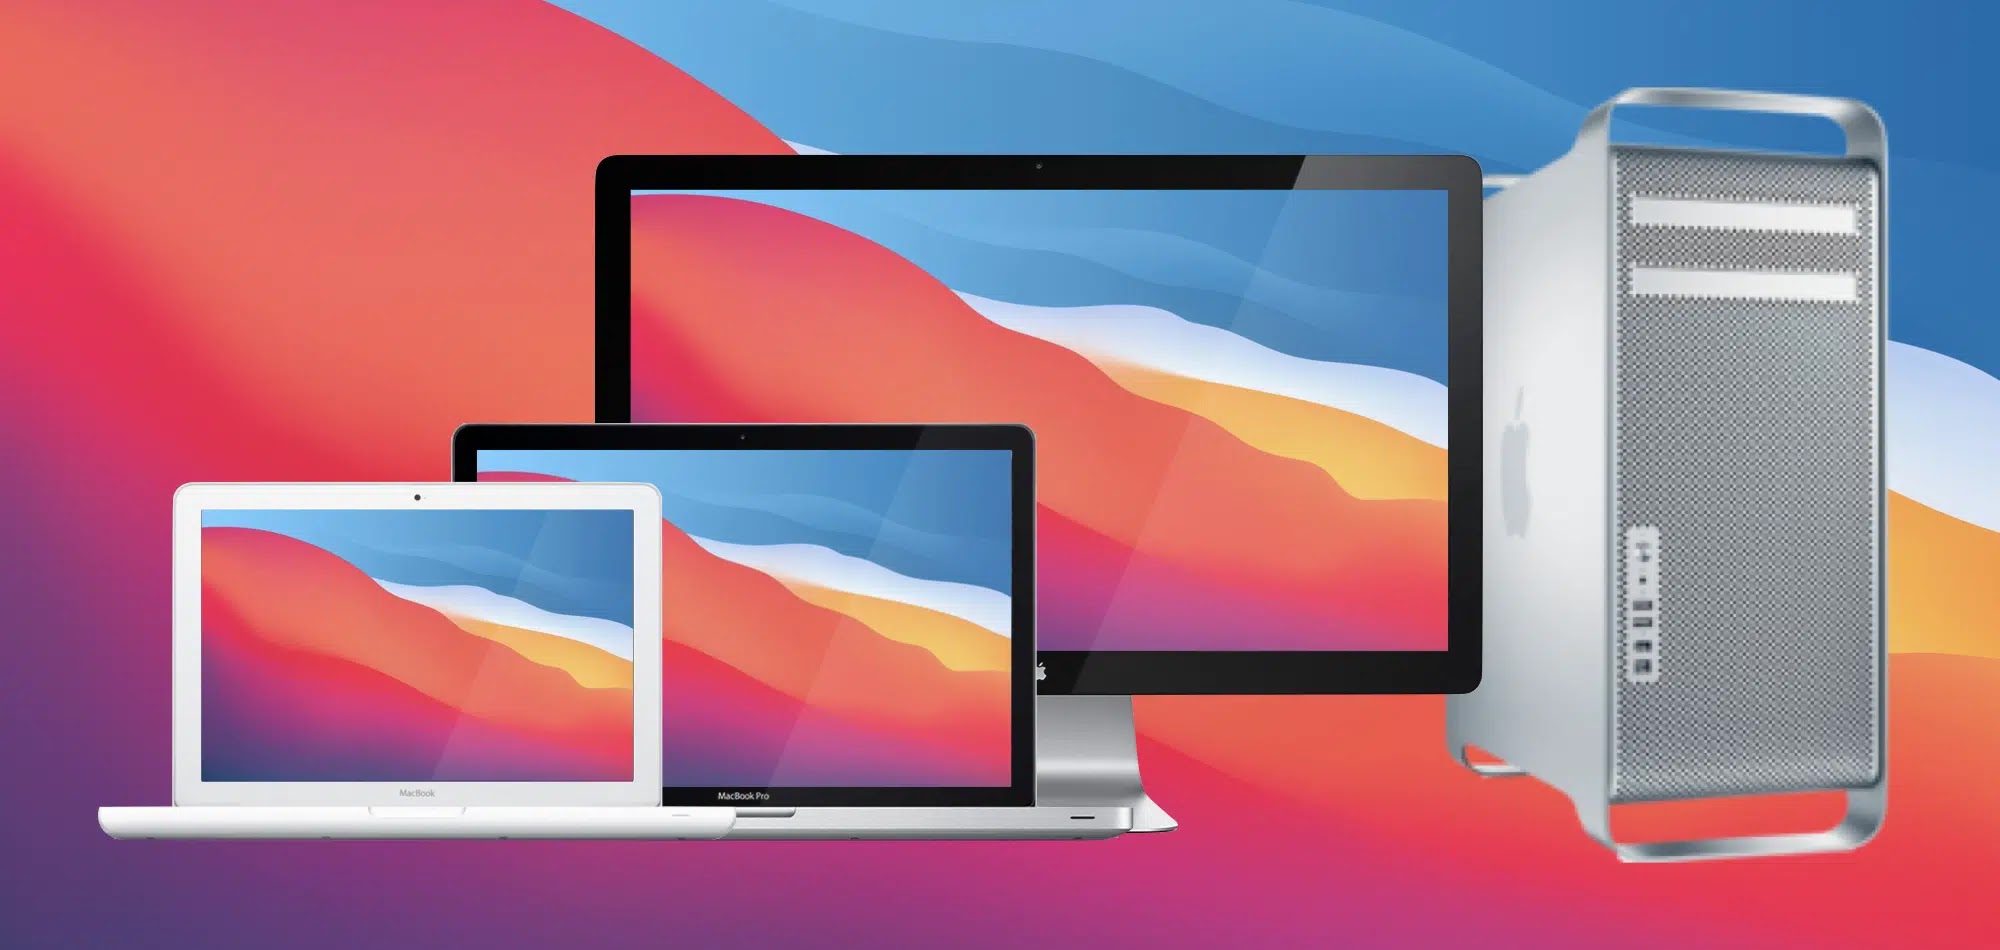 MacBookPro2013/  SSD / Ventura / Big Sur